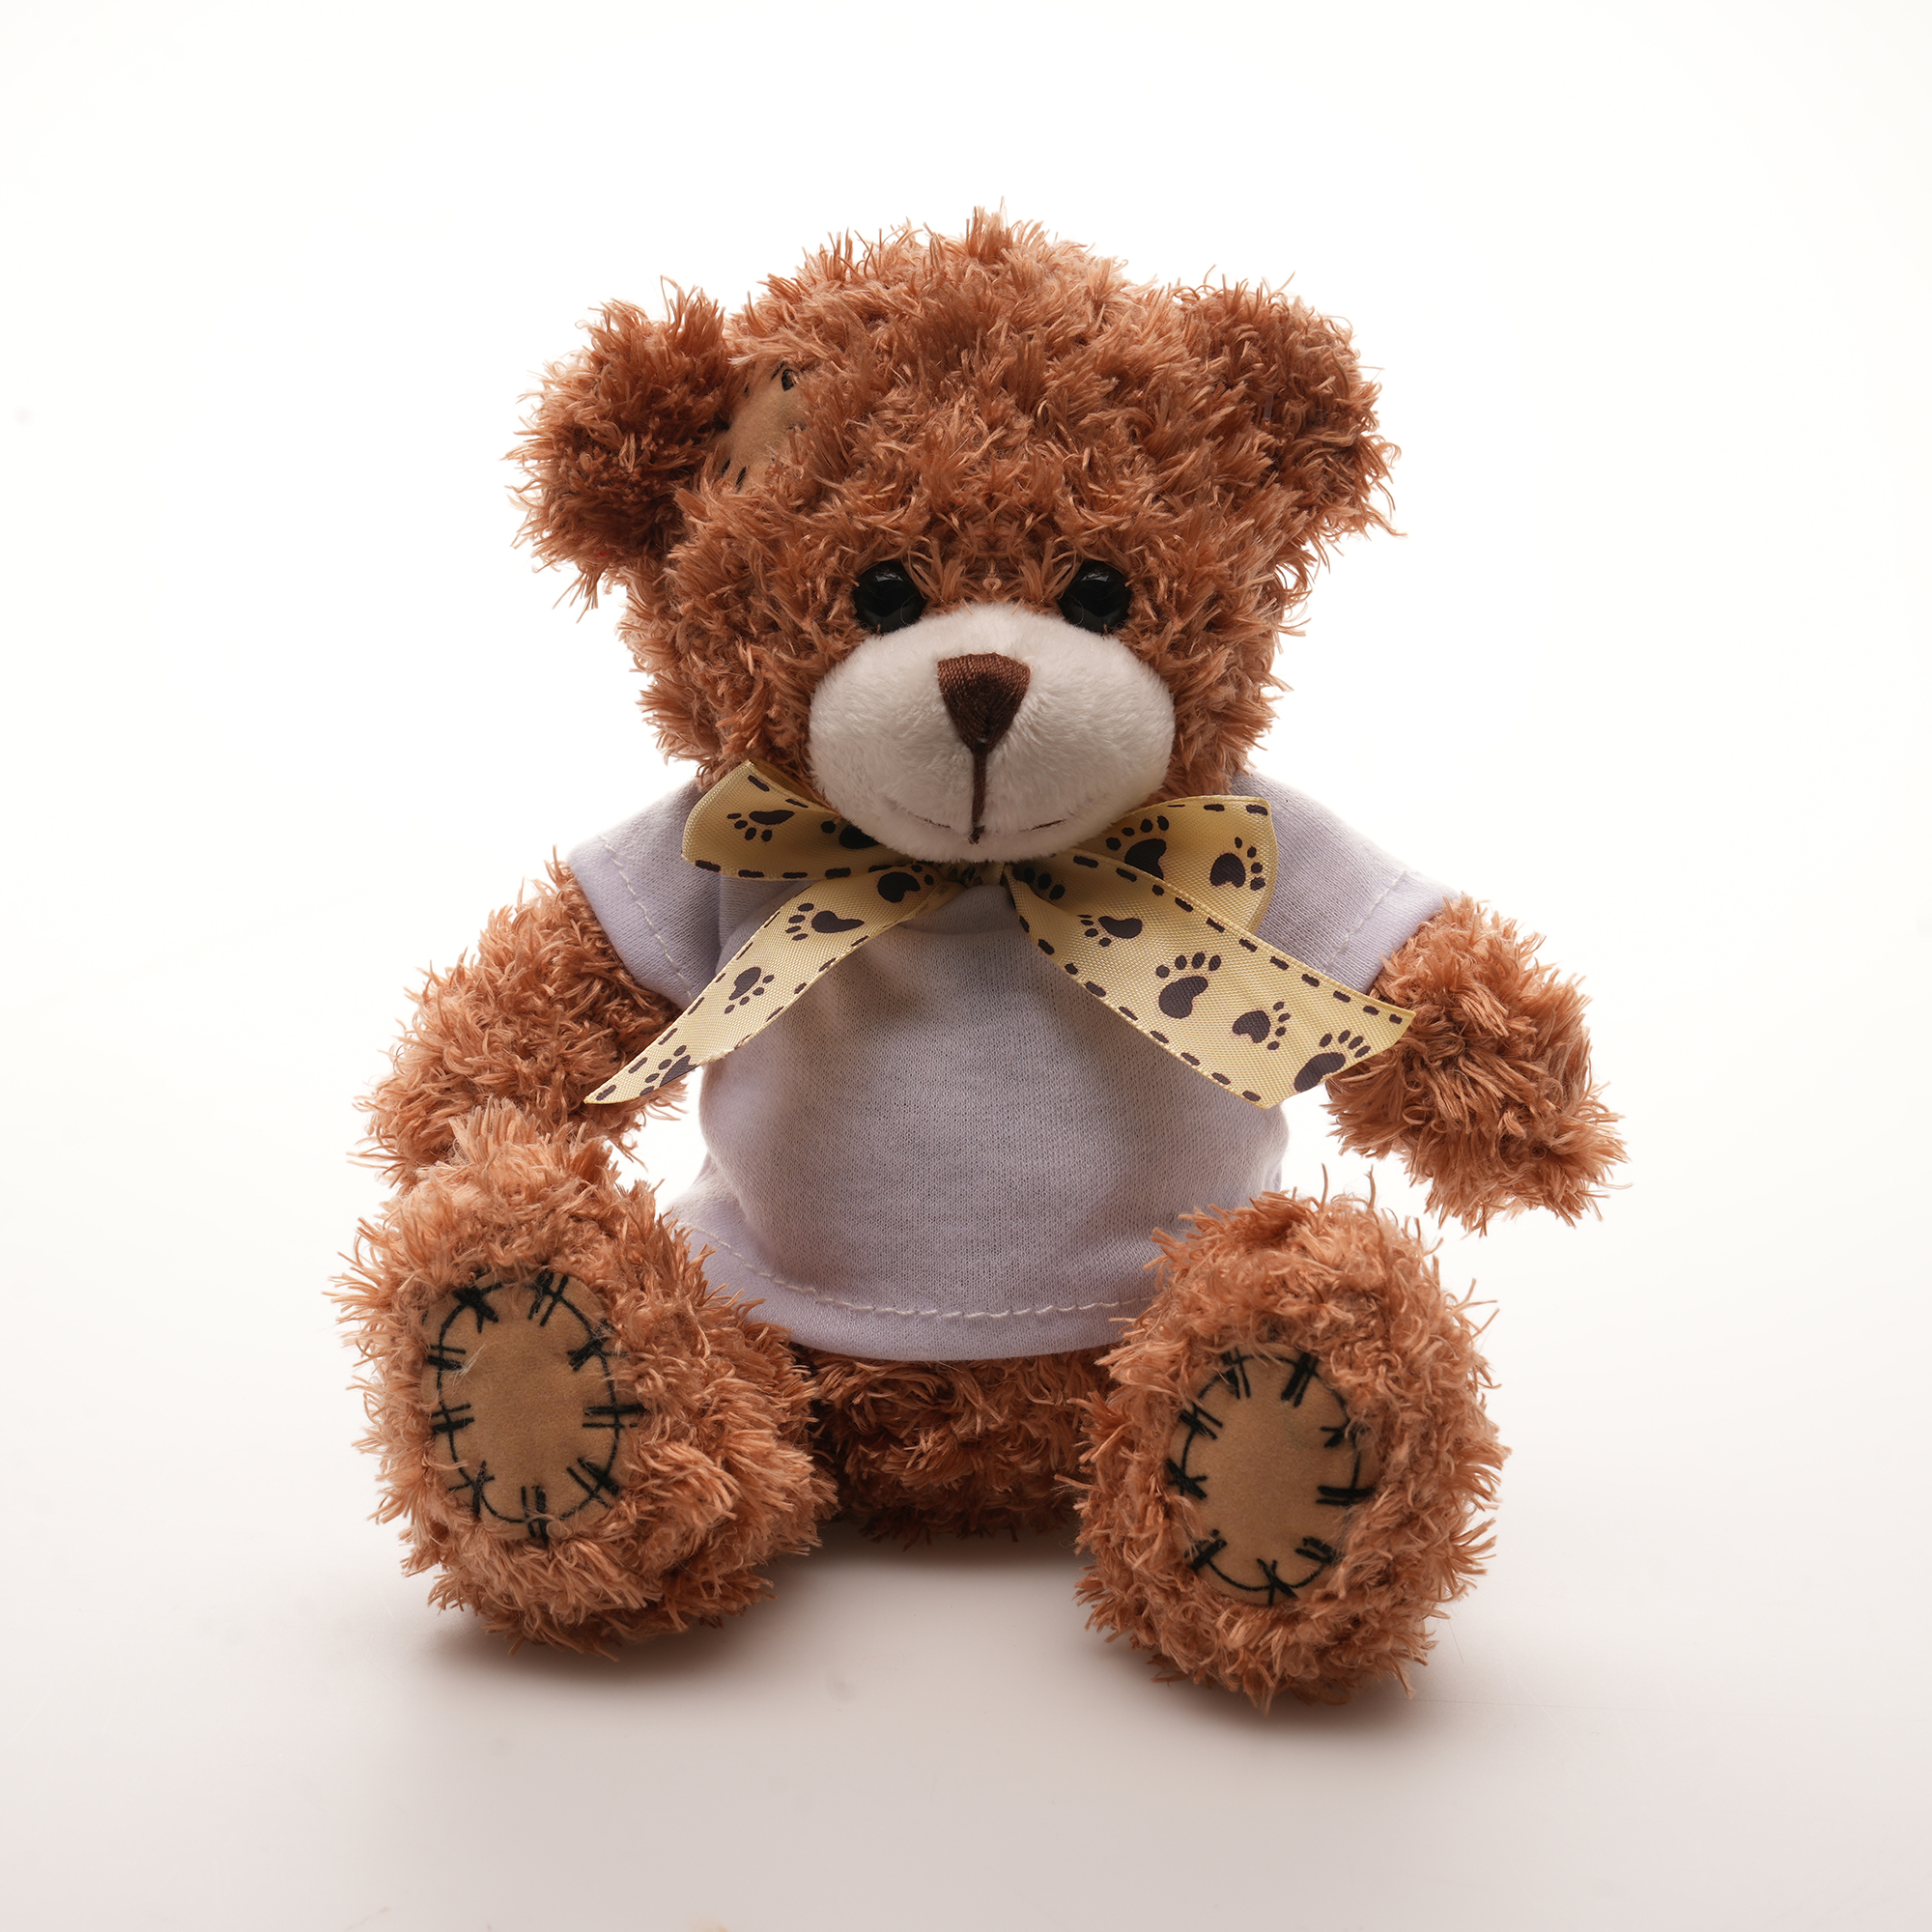 TB0003 2 - Tuffy 13cm Teddy Bear